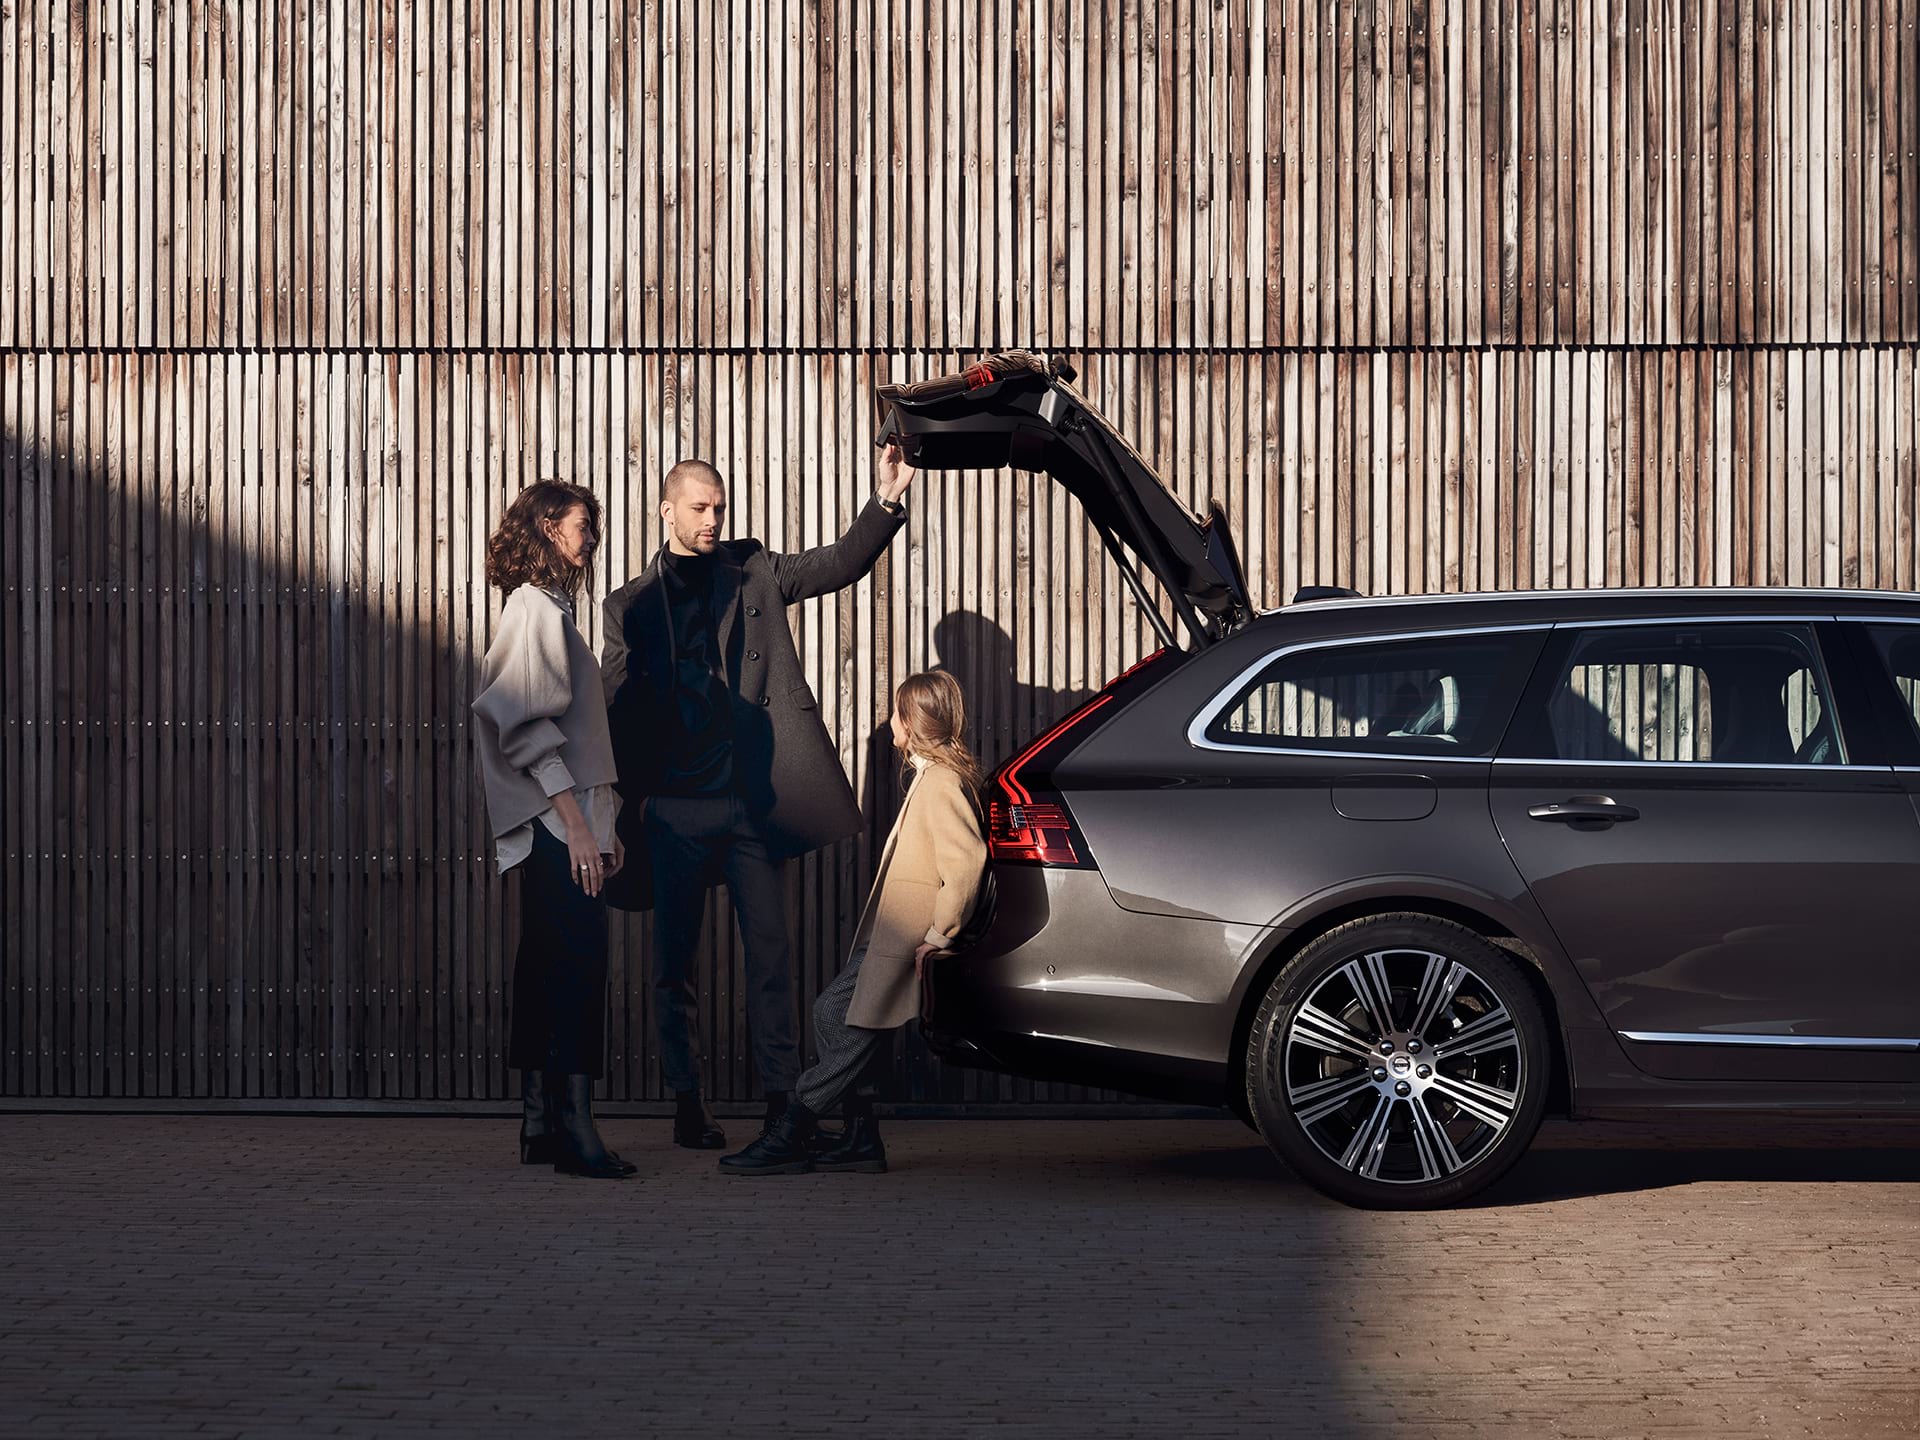 Een man, vrouw en kind staan dicht bij een Volvo estate met de achterklep open terwijl de man zijn hand erop legt.